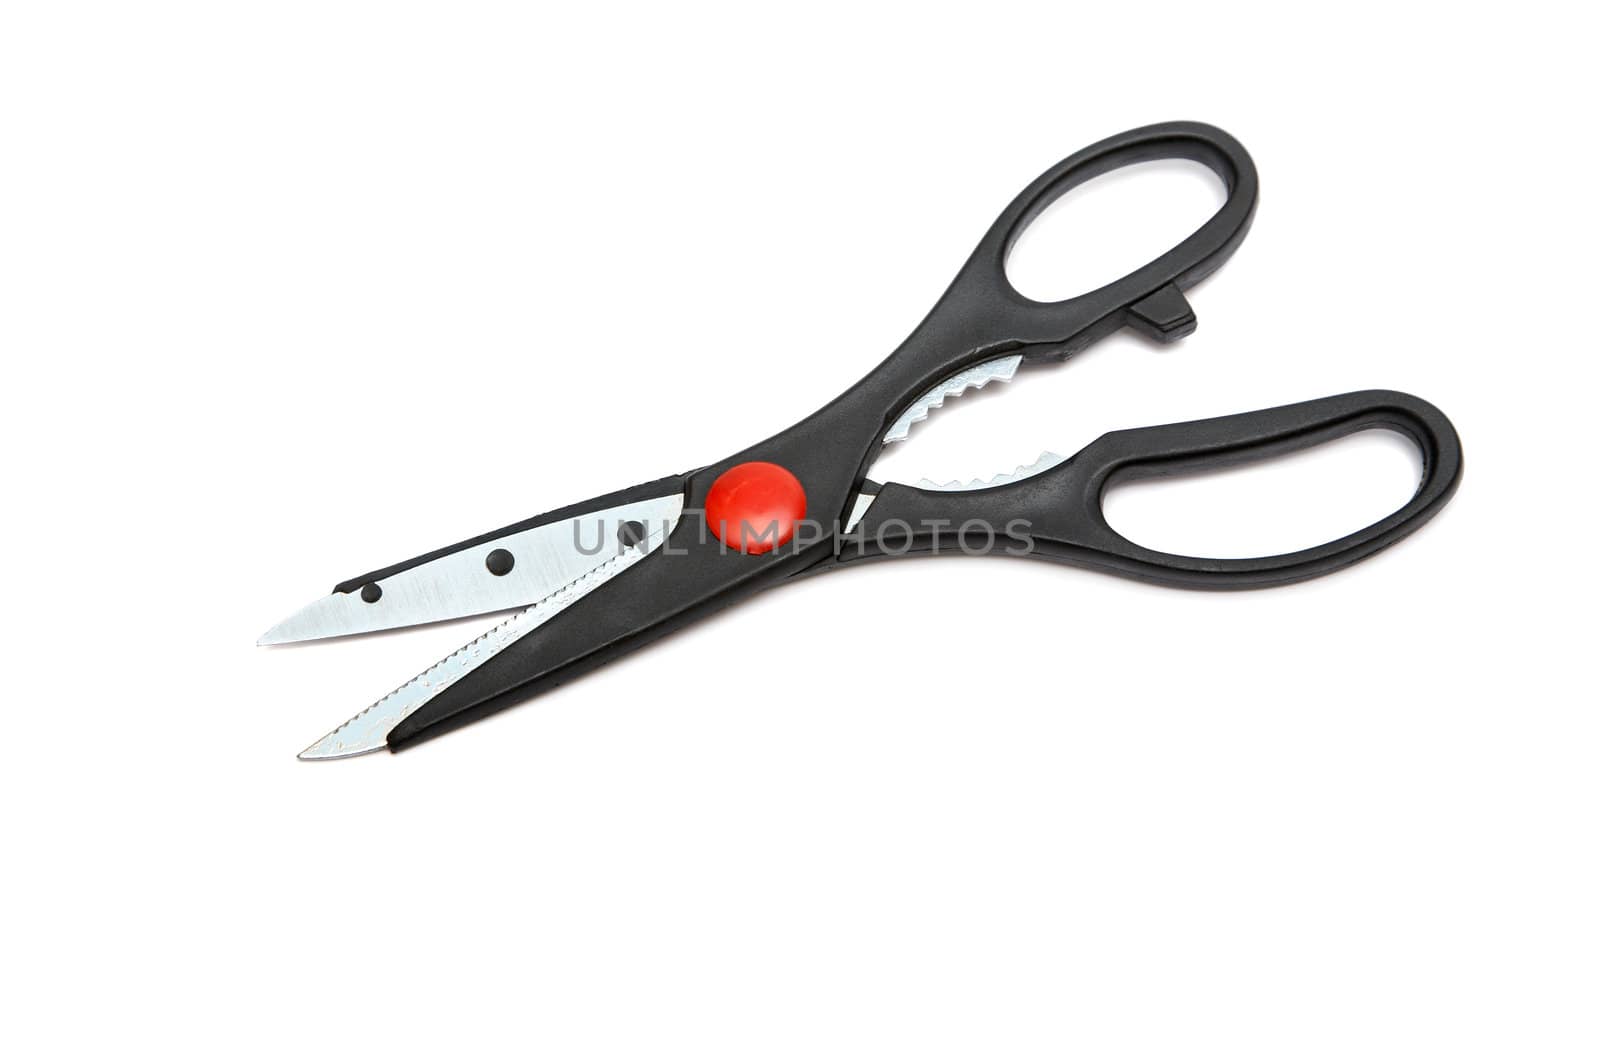 Modern kitchen scissors on a white background